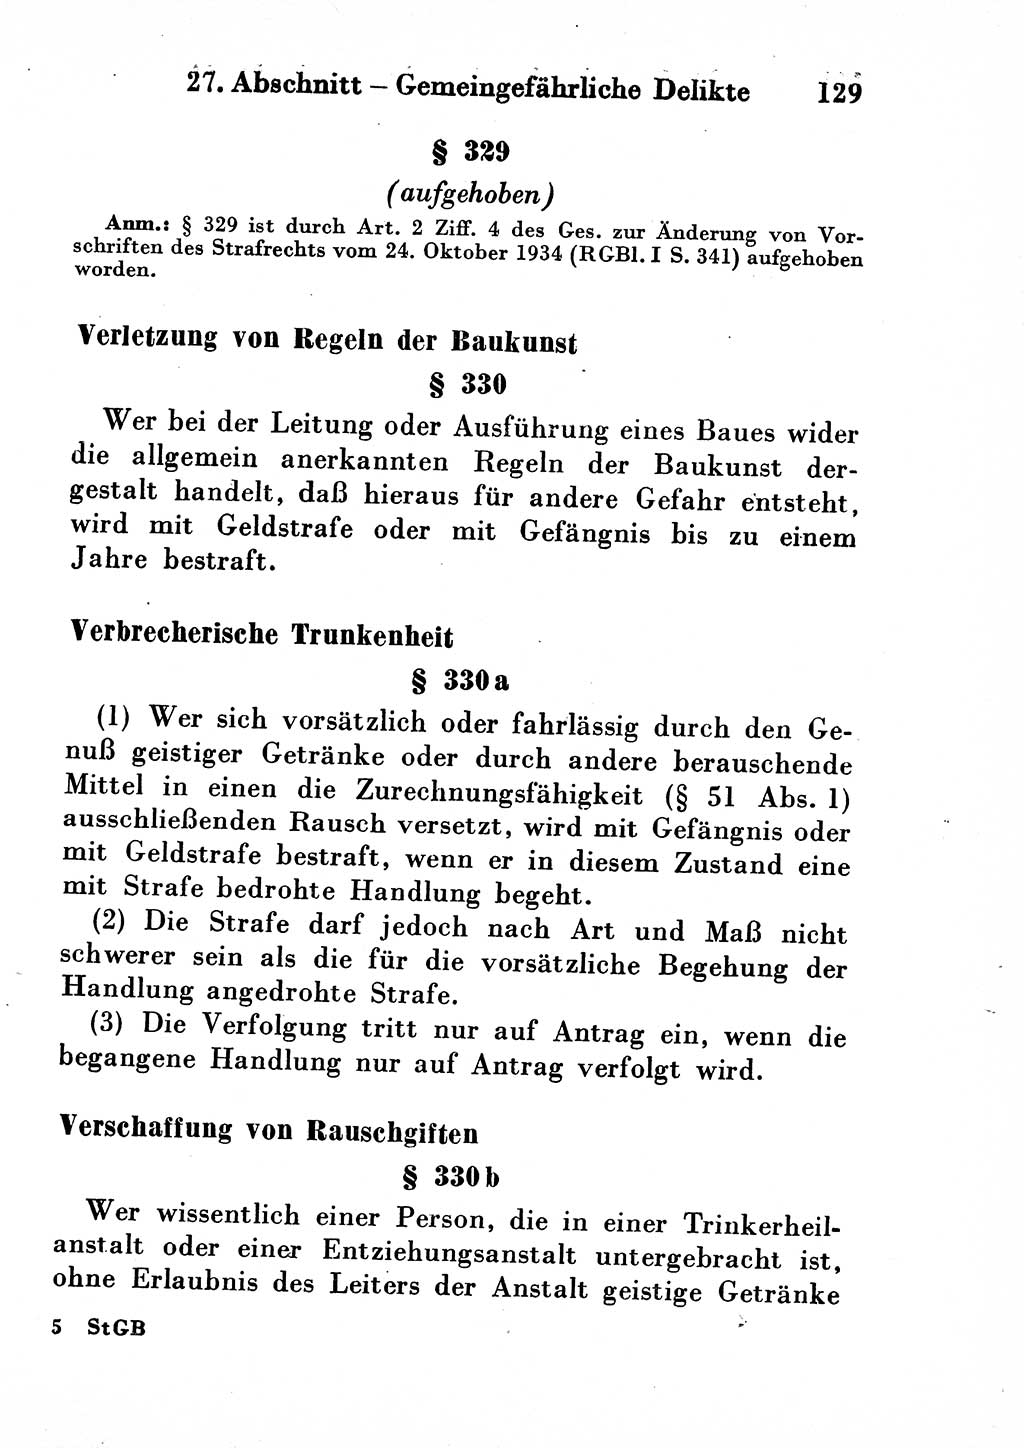 Strafgesetzbuch (StGB) und andere Strafgesetze [Deutsche Demokratische Republik (DDR)] 1954, Seite 129 (StGB Strafges. DDR 1954, S. 129)